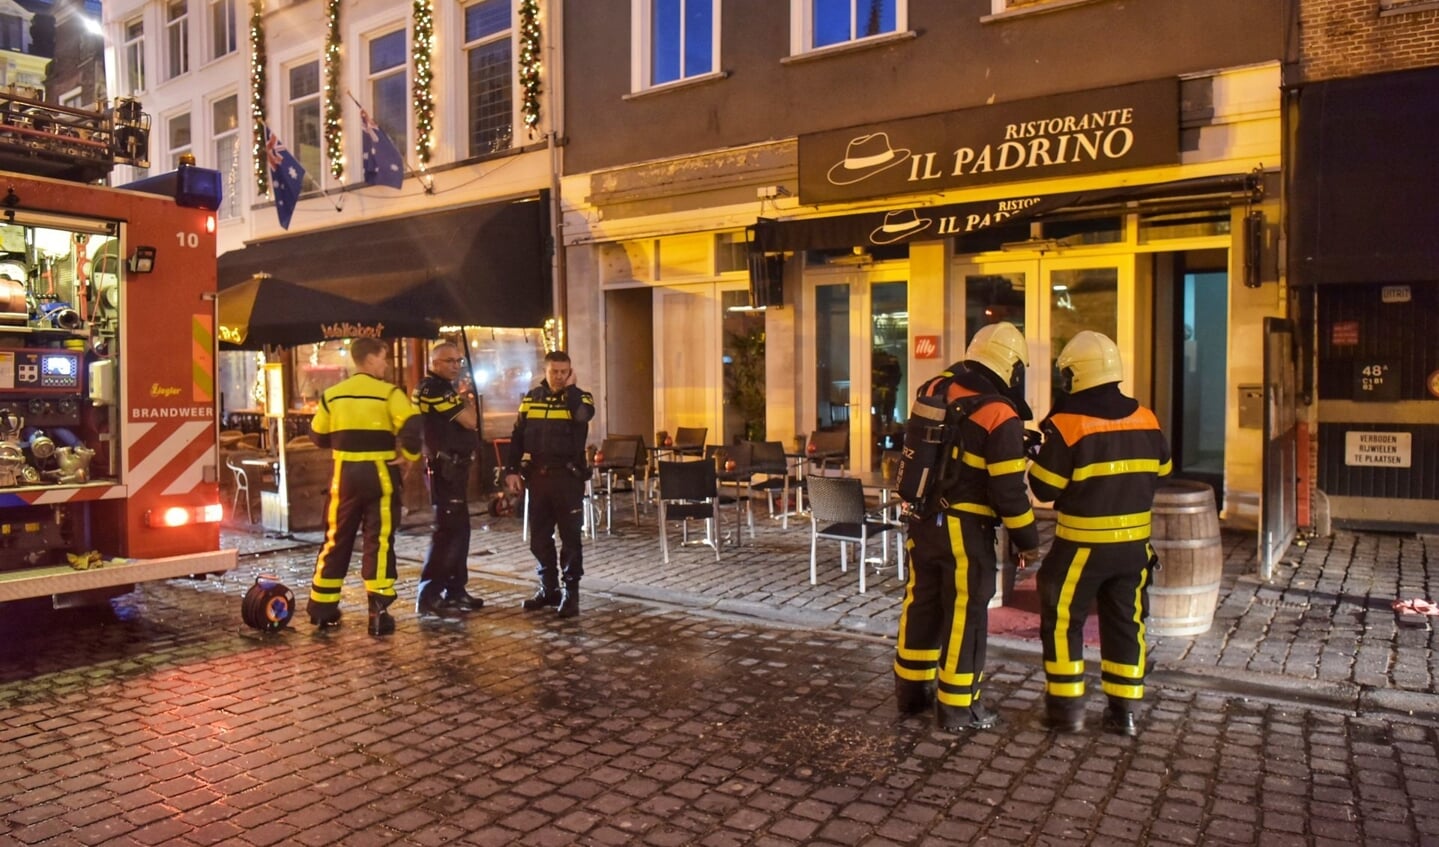 De brandweer moest in actie komen bij Il Padrino.